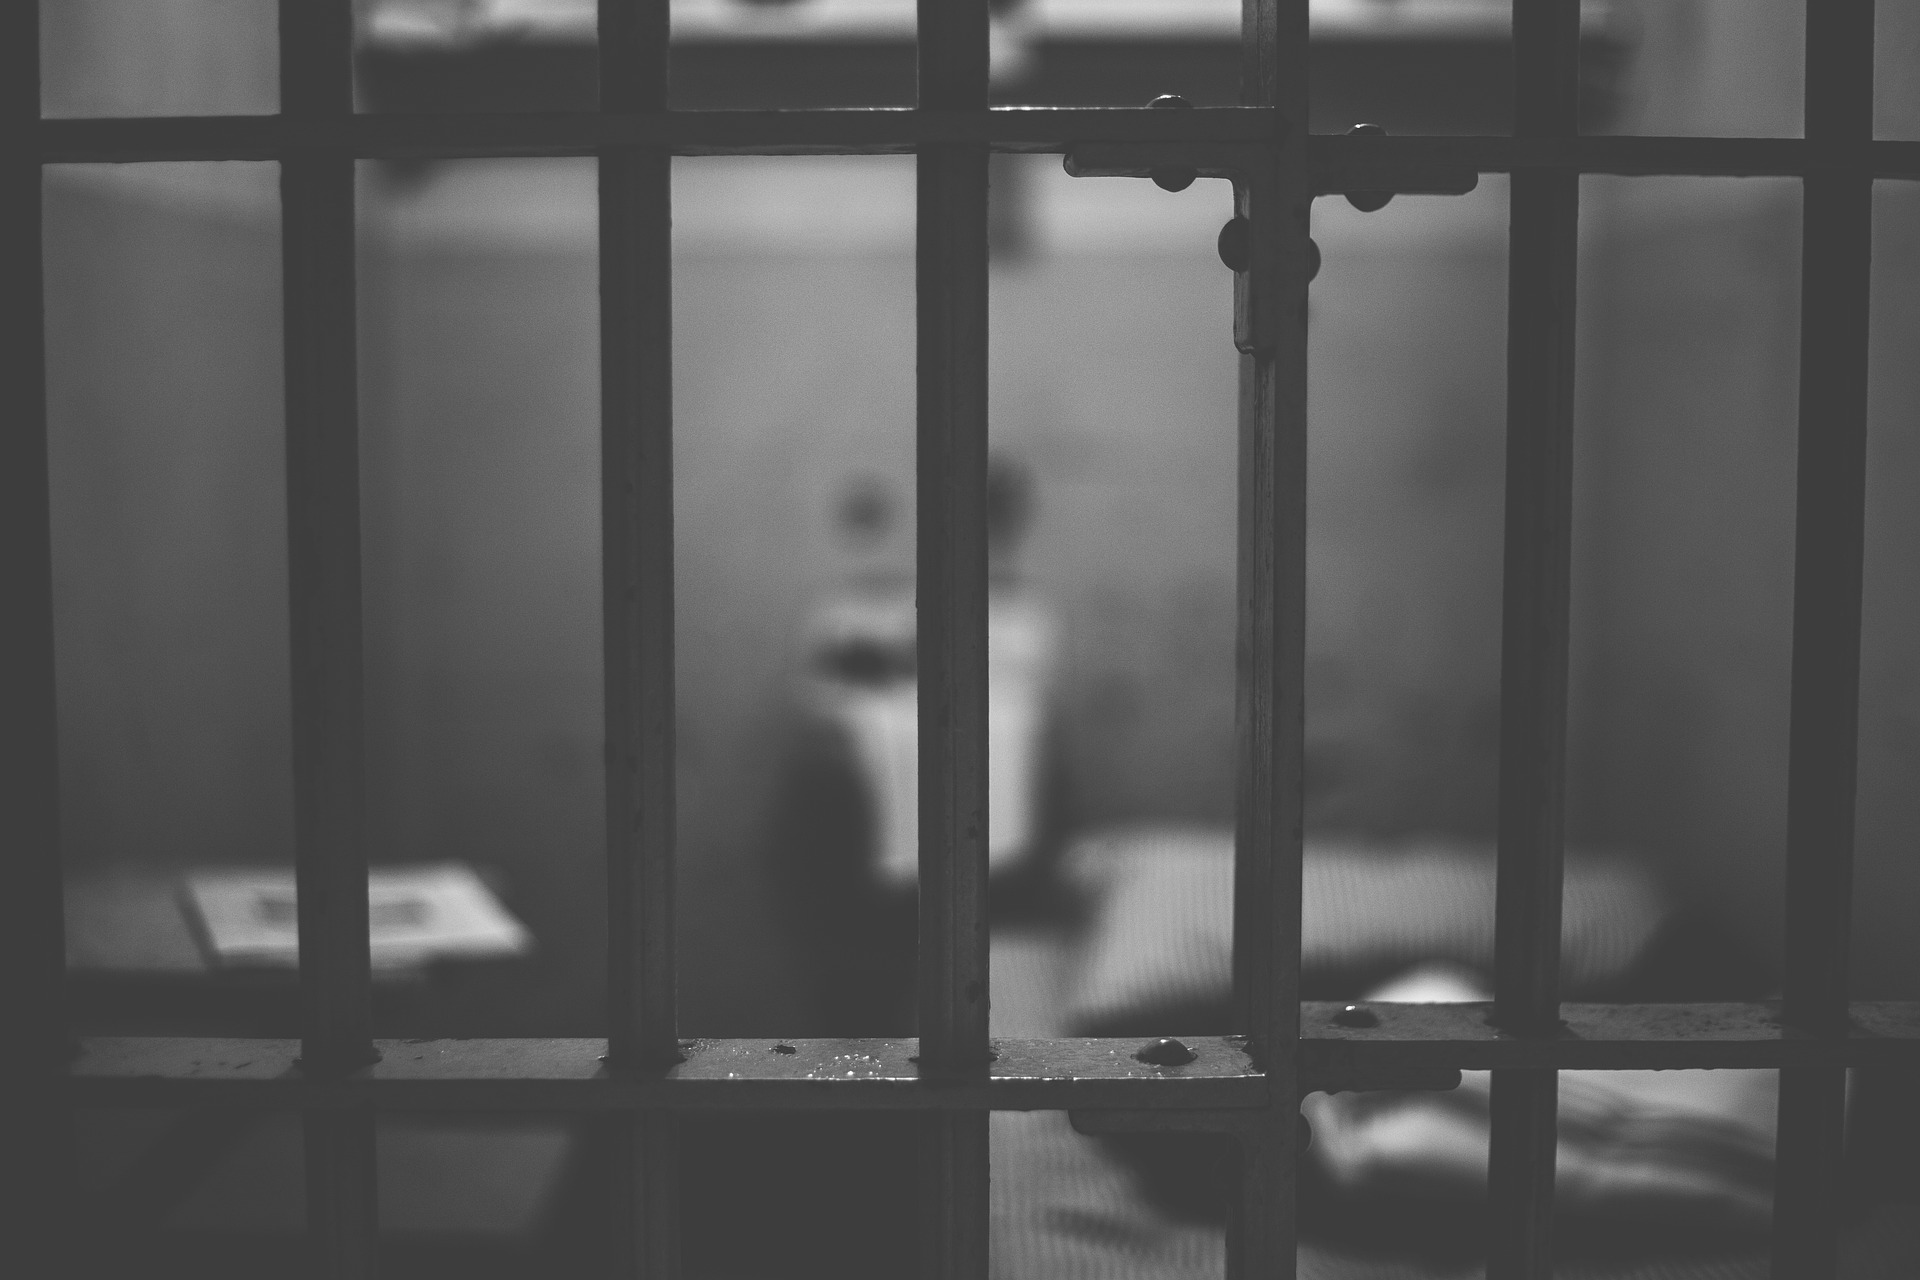 Incarceration Rates in Georgia